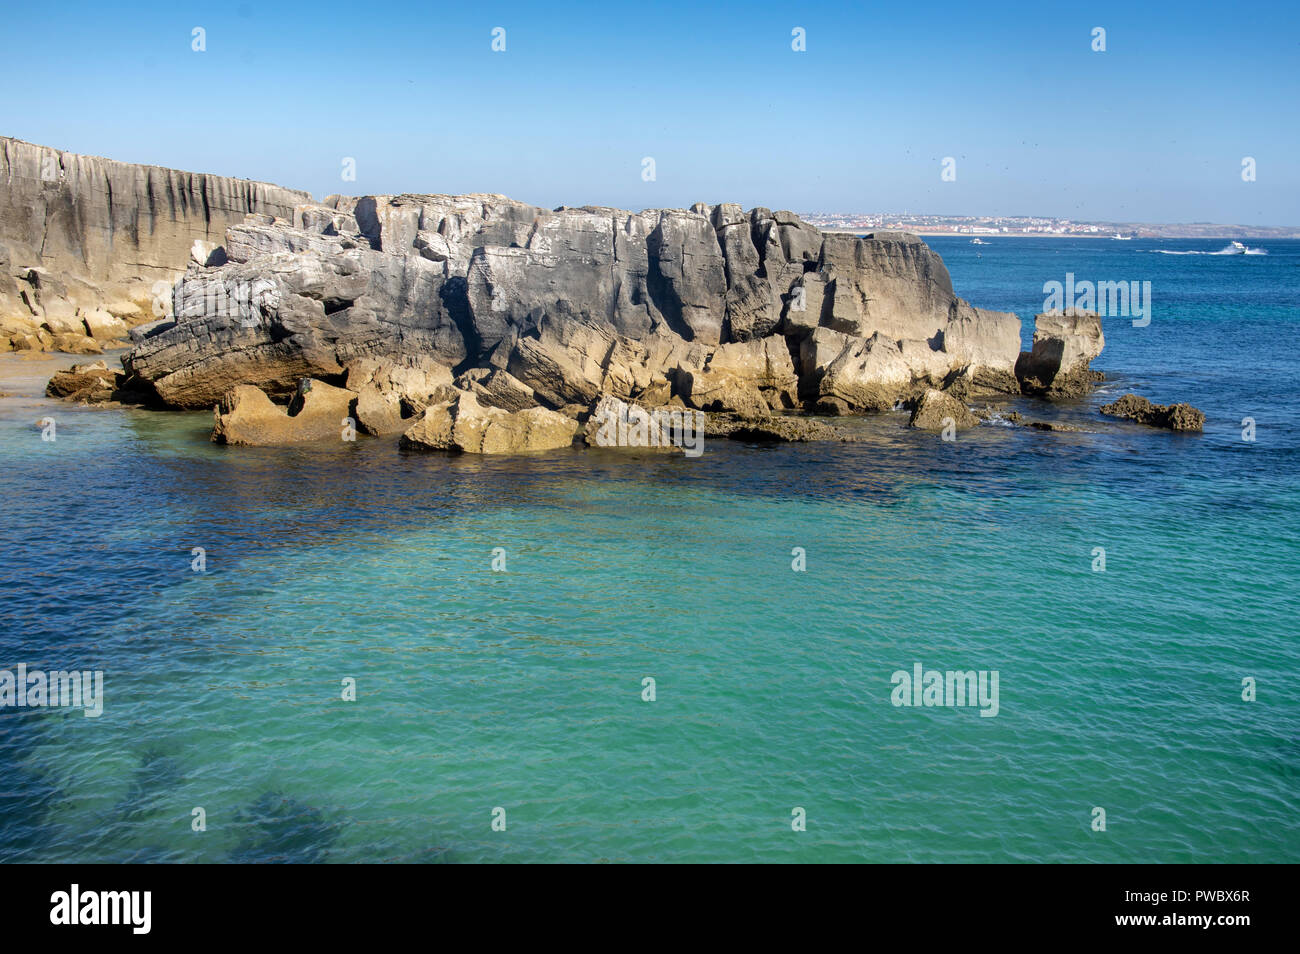 Praia porto de areia sul hi-res stock photography and images - Alamy